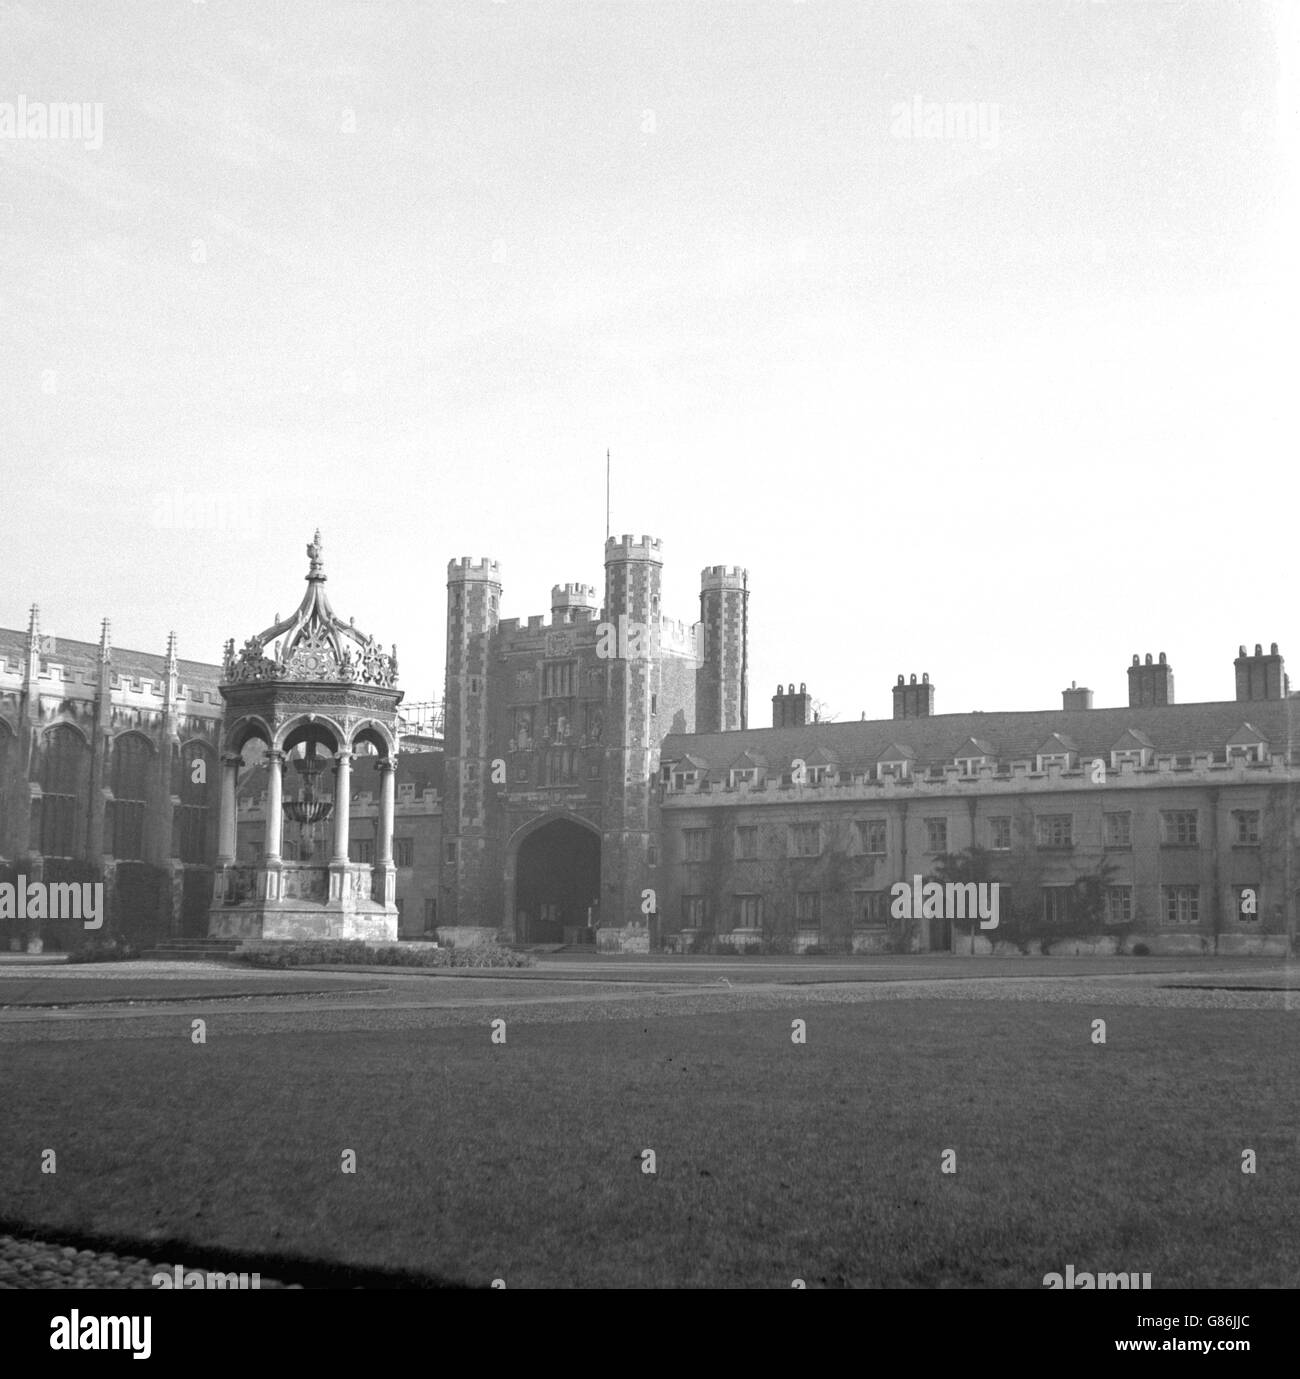 Il Grande Tribunale al Trinity College di Cambridge, dove il Principe Carlo diventerà un laureato in ottobre. La maggior parte della Grande Corte fu costruita tra il 1593 e il 1615, quando Thomas Nevile fu Maestro del Collegio. La fontana rinascimentale, eretta nel 1602, è alimentata con acqua da un condotto posato dai frati francescani. Foto Stock